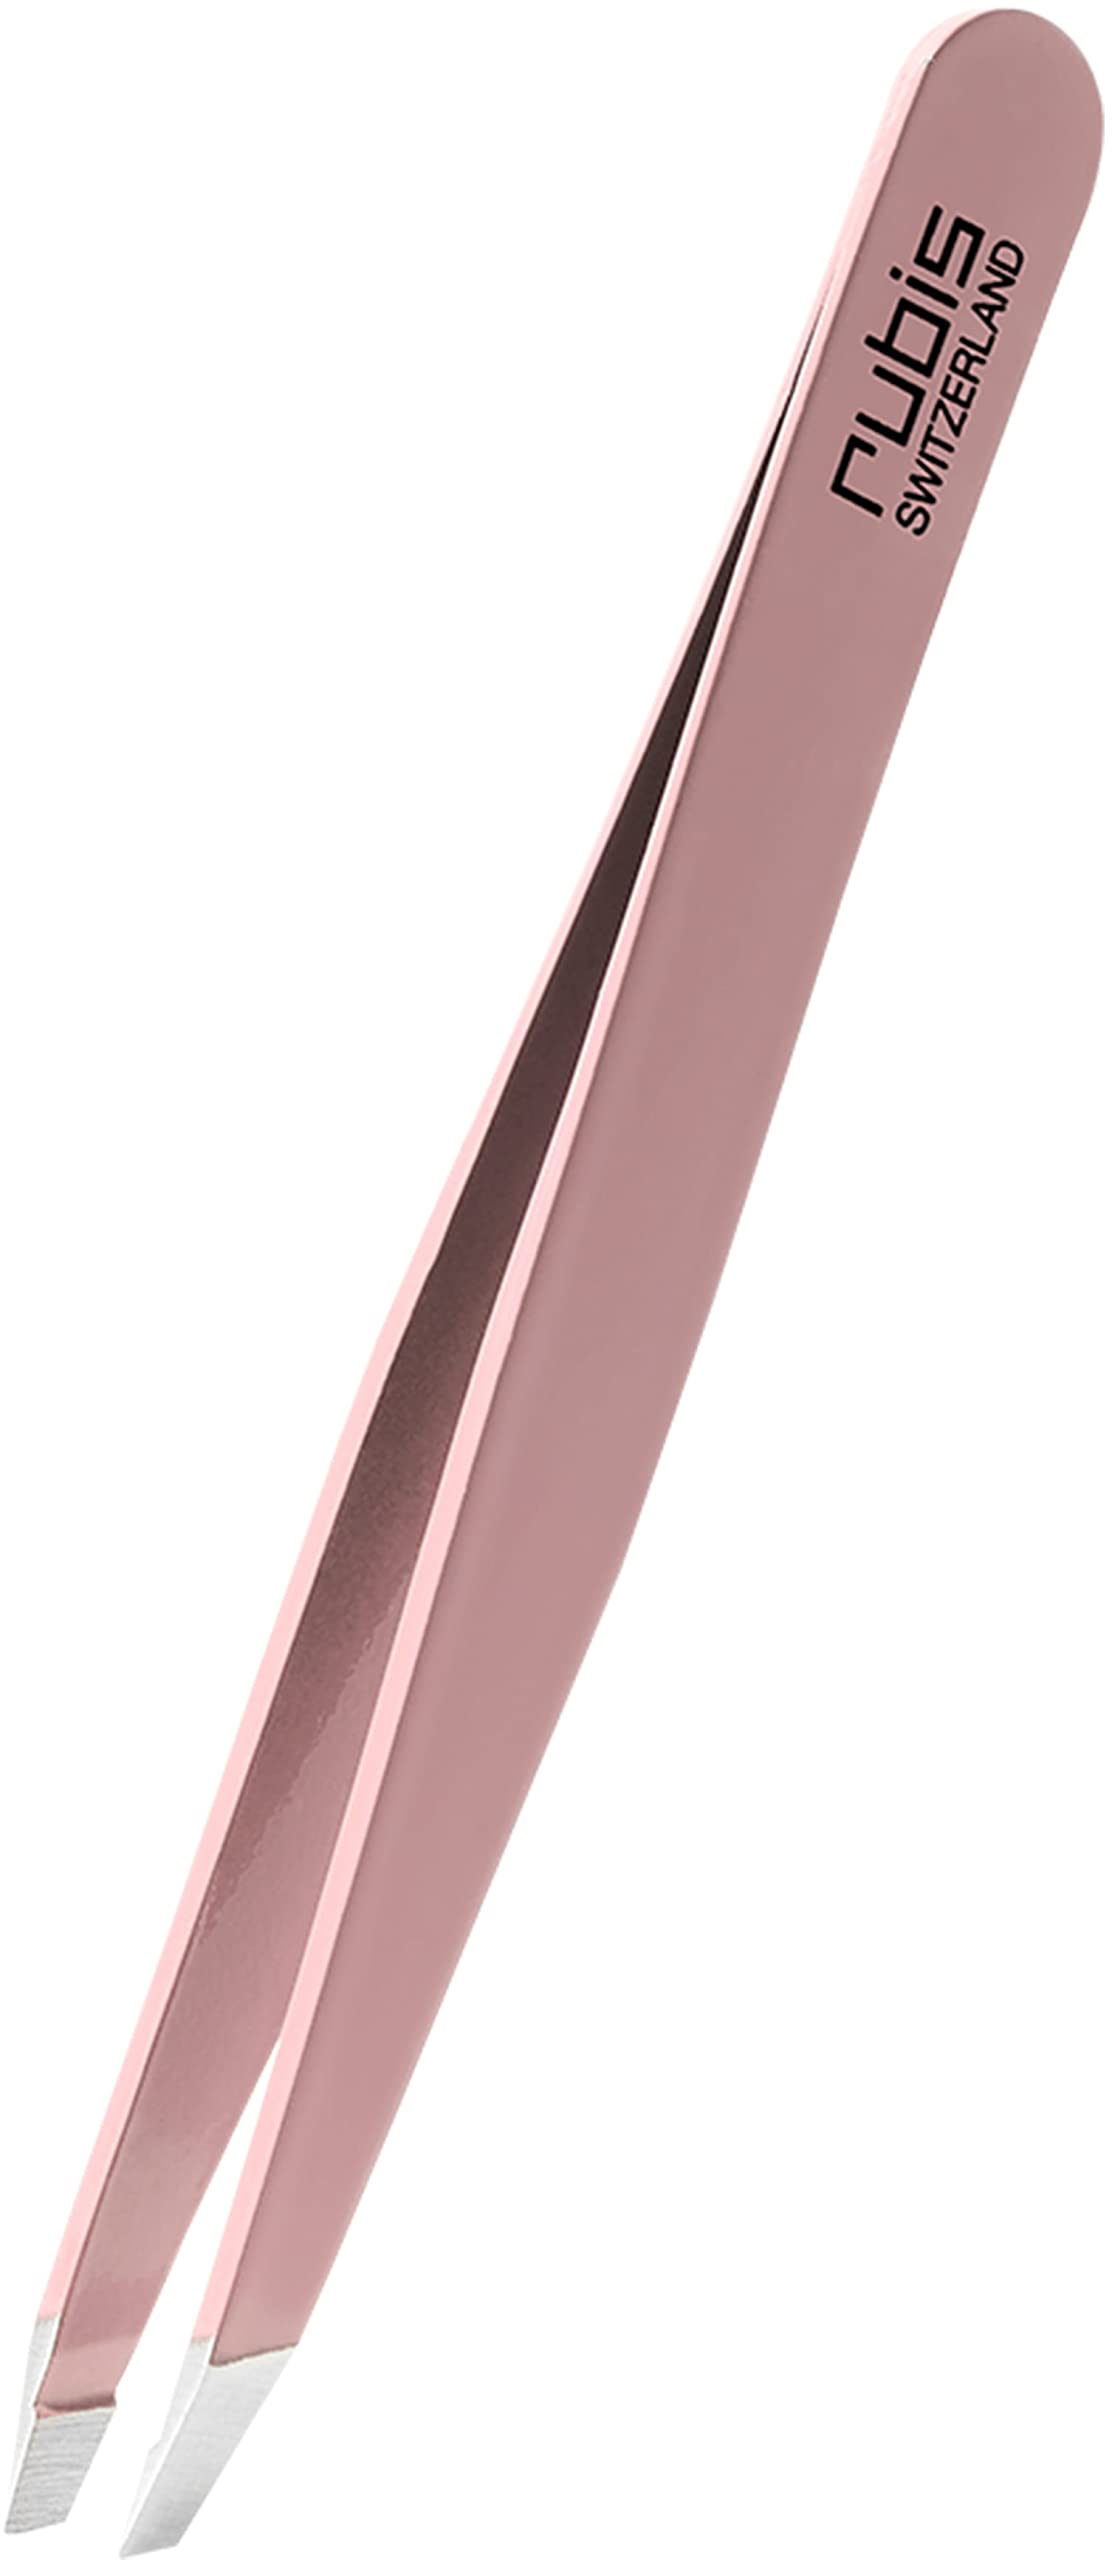 Outlet Shop  Pince à épiler Rubis en acier inoxydable rose - inclinée, fine et pointue - pince a epiler professionnelle pour les sourcils PUBhgTwsW grand